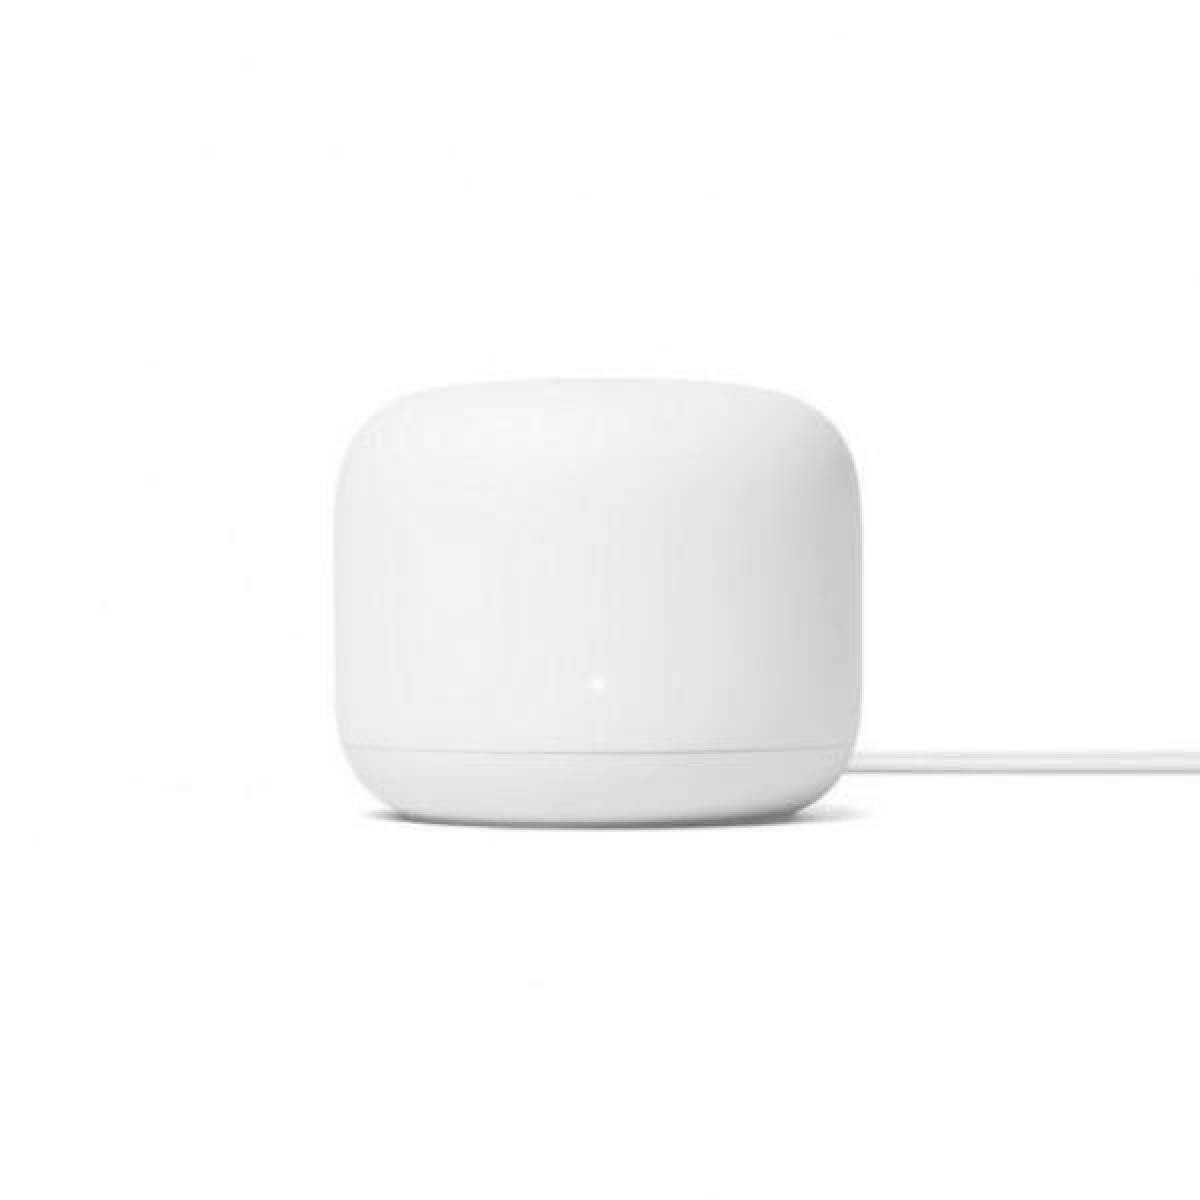 GOOGLE Google Nest Wifi Router 1PK - White